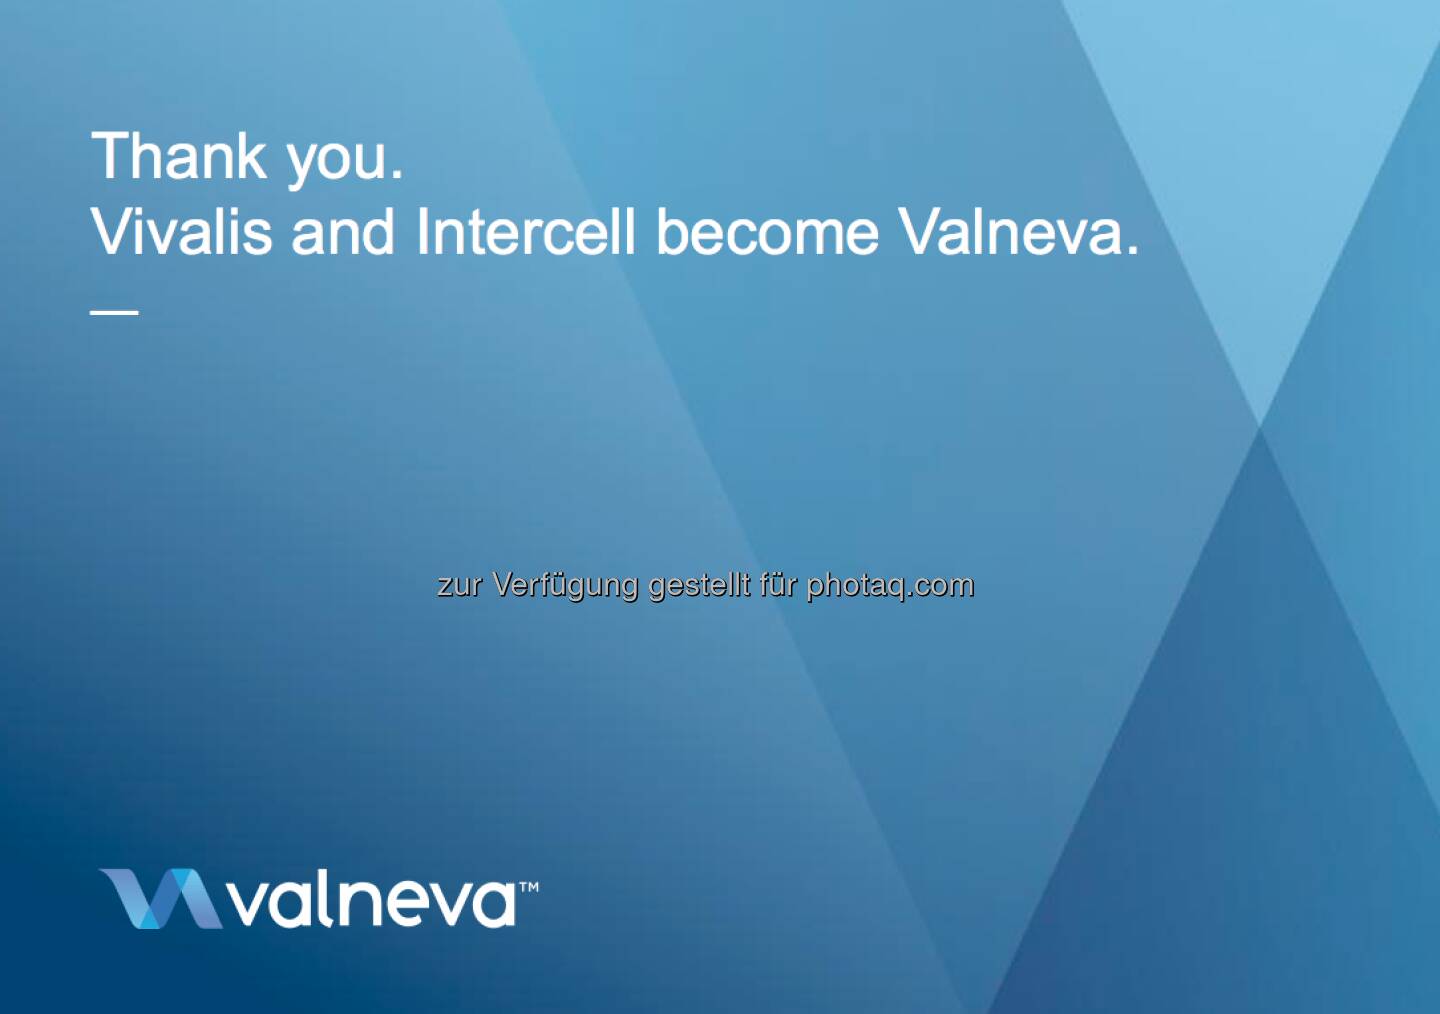 Valneva: Das Logo der Firma, die aus Vivalis und Intercell entstehen wird (c) Valneva